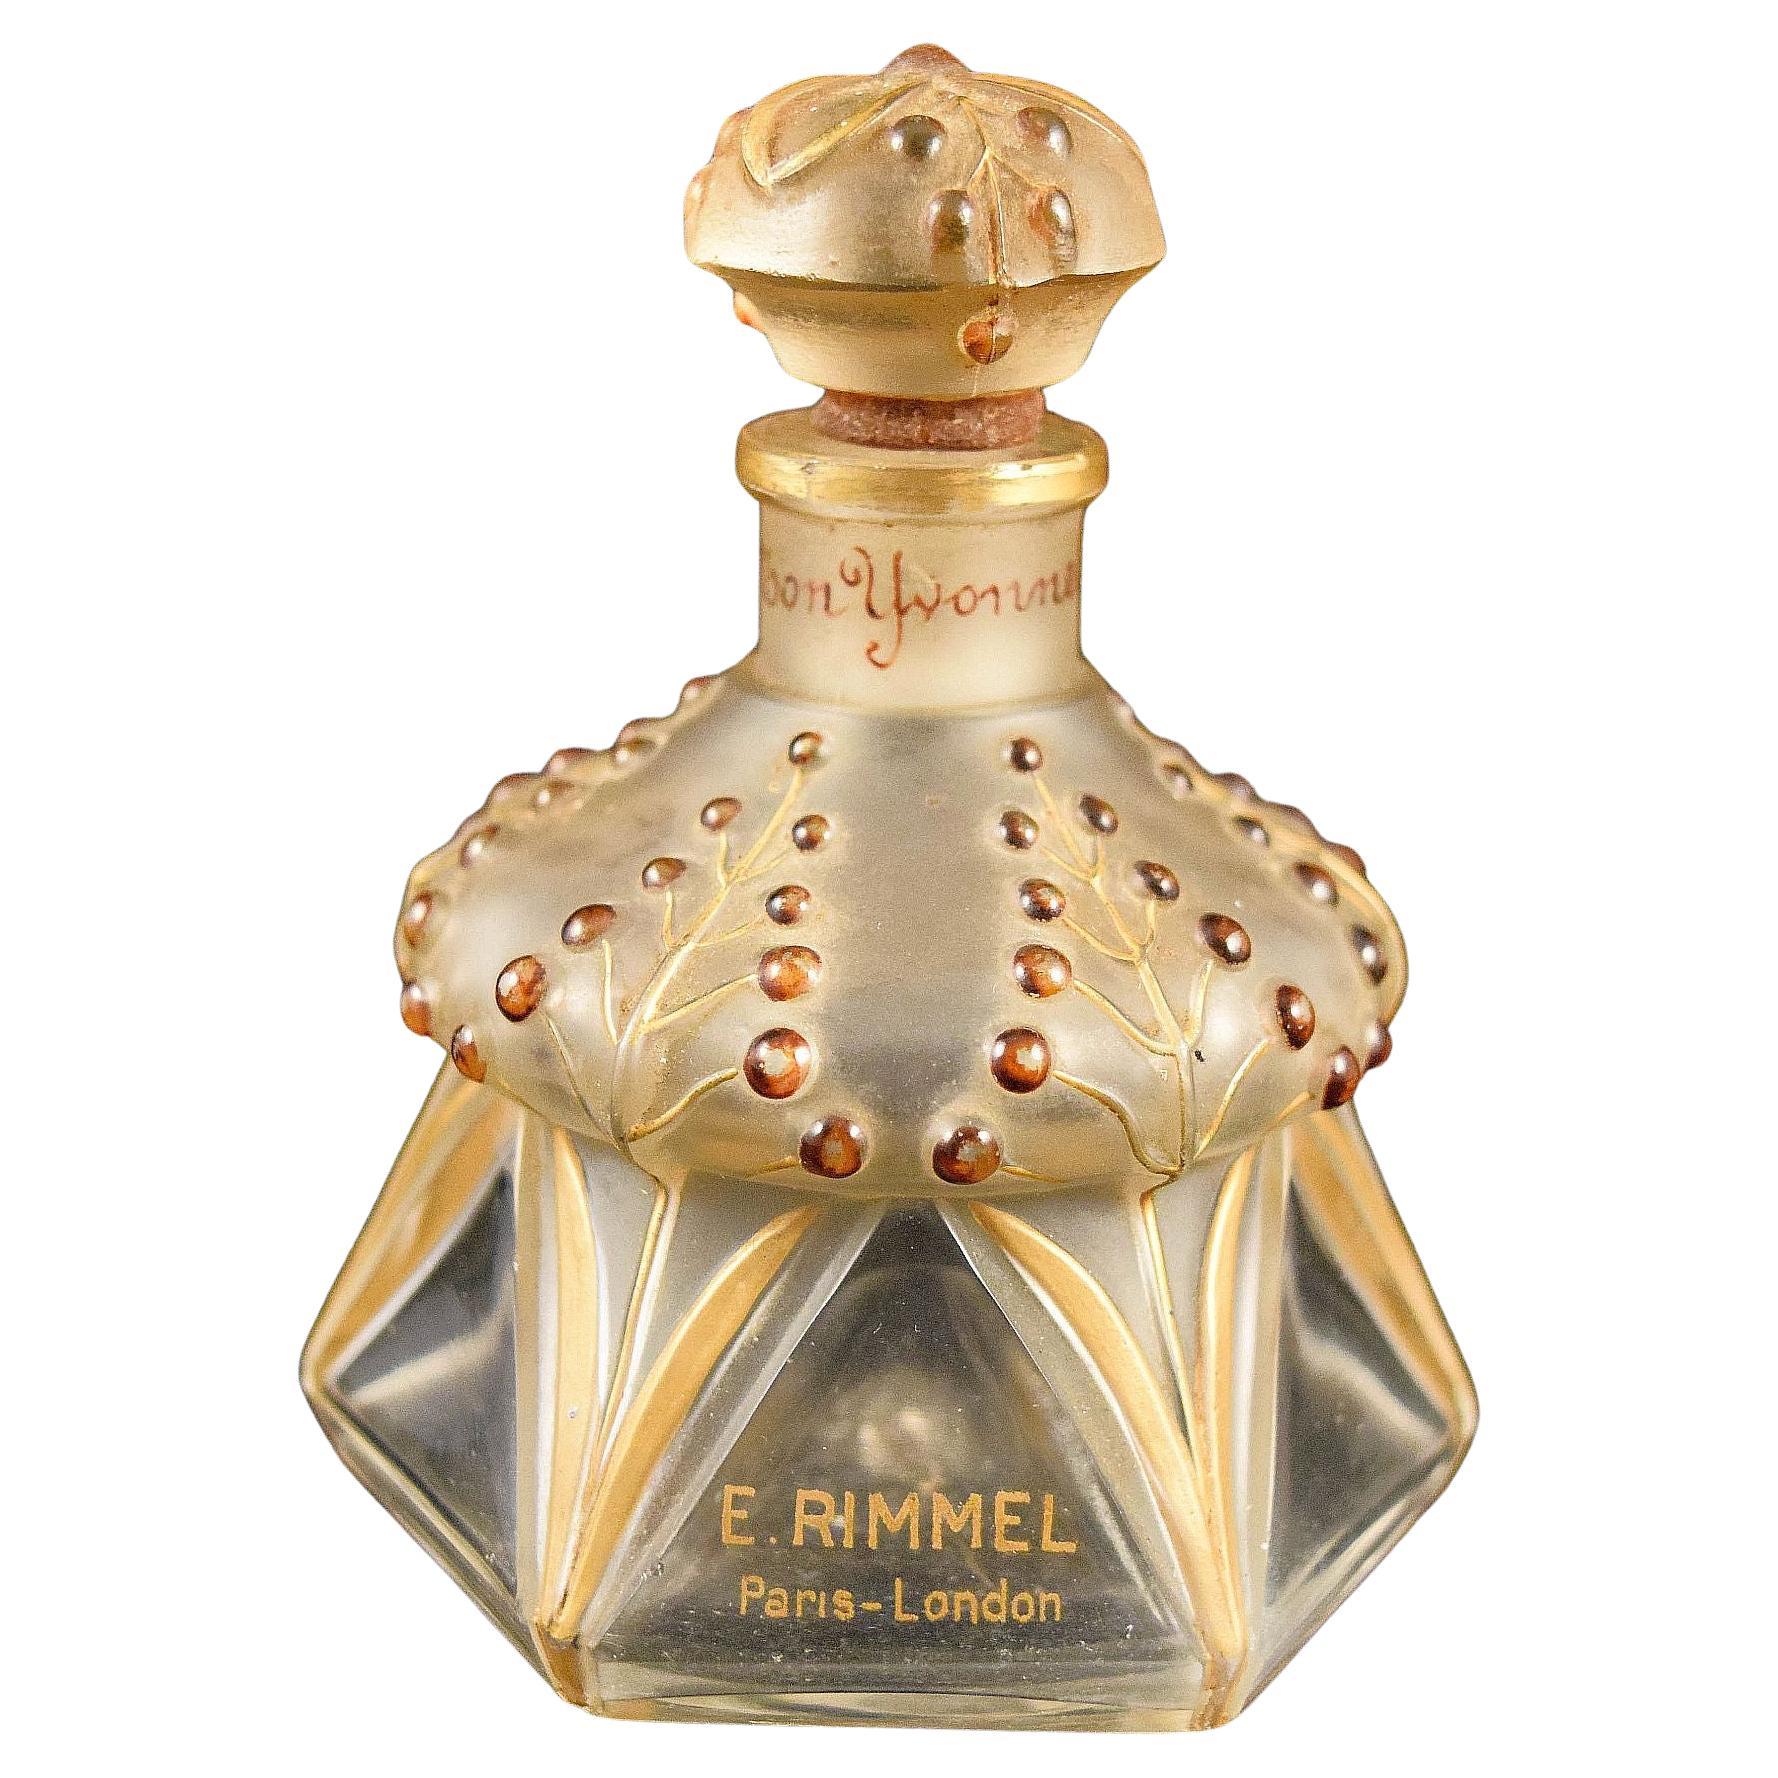 Julien Viard extremely rare Yvonette glass perfume bottle